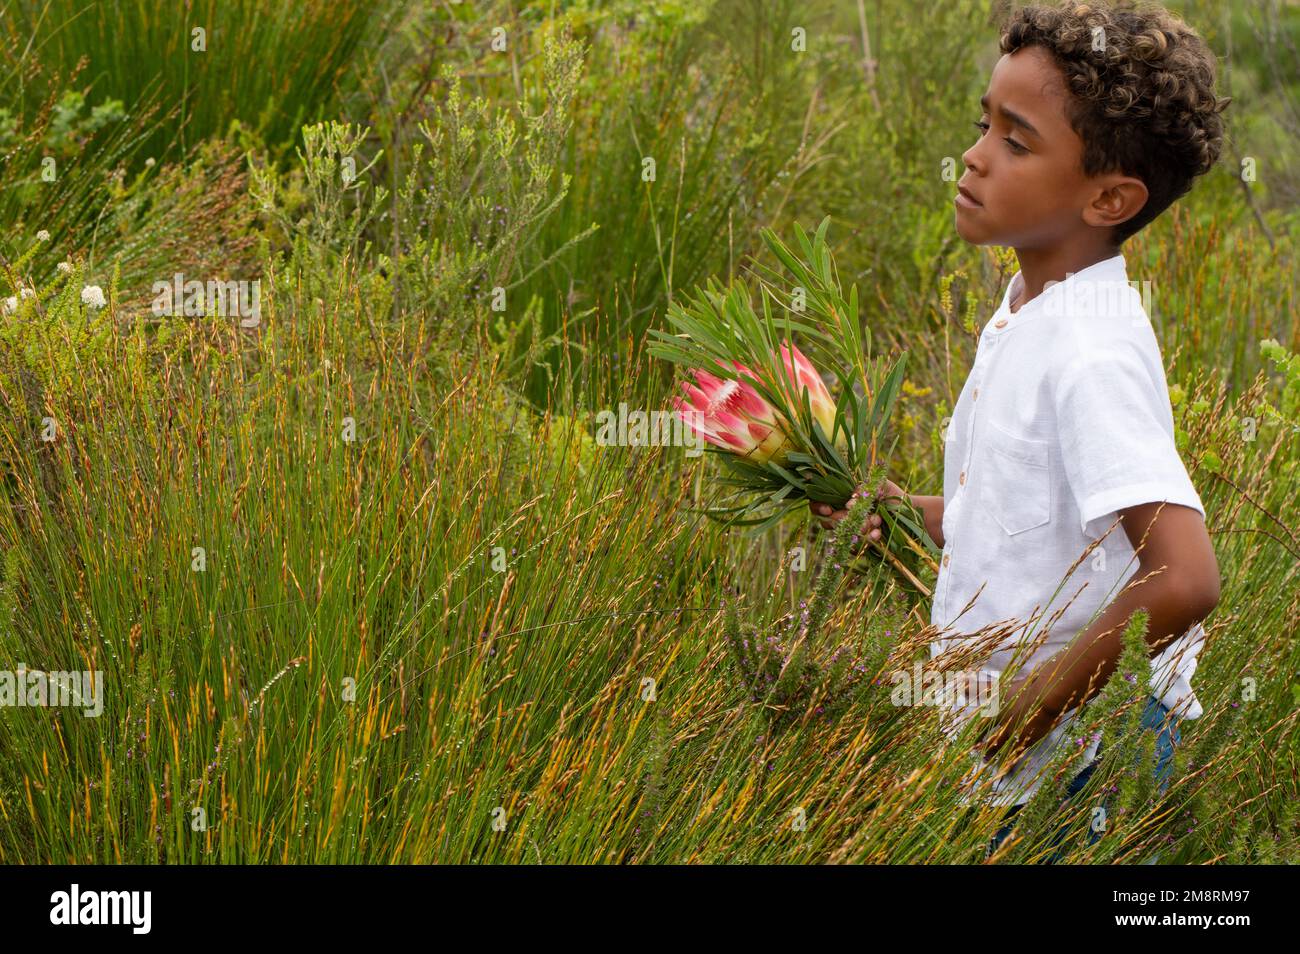 Young boy seen standing between fynbos bush Stock Photo